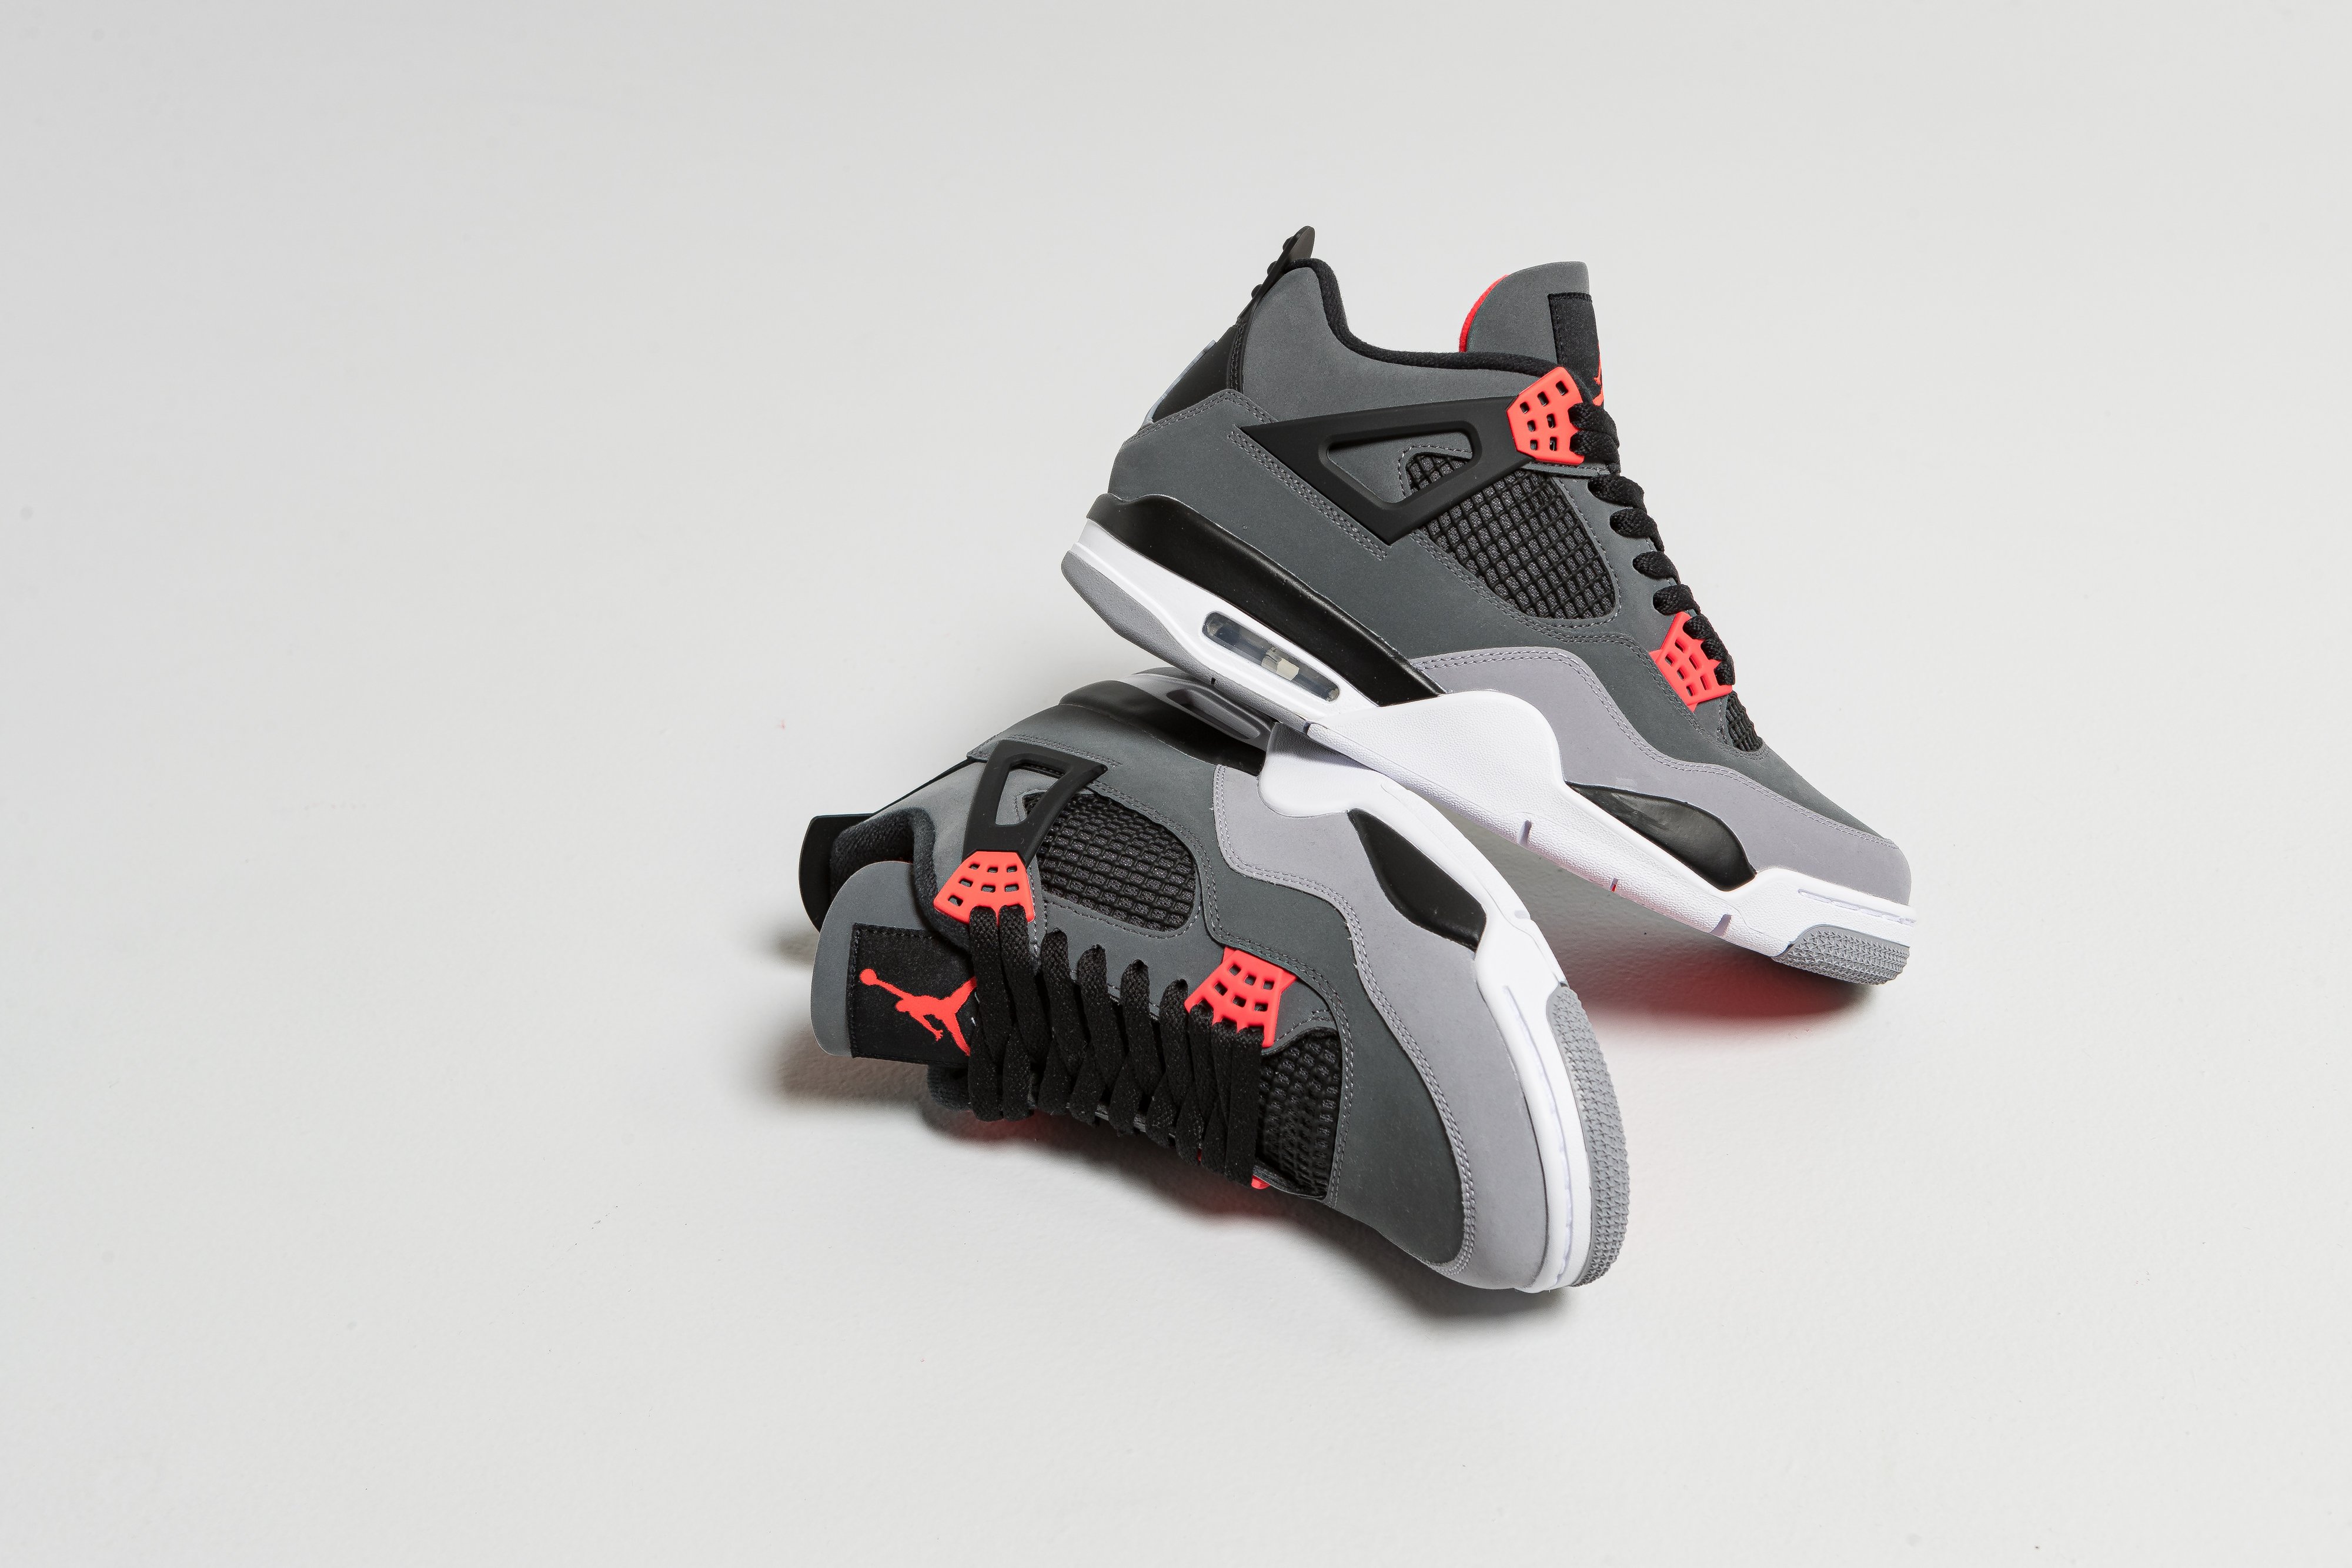 Jordan - Air Jordan 4 Retro - Dark Grey/Infrared-Black-Cement Grey - Up There